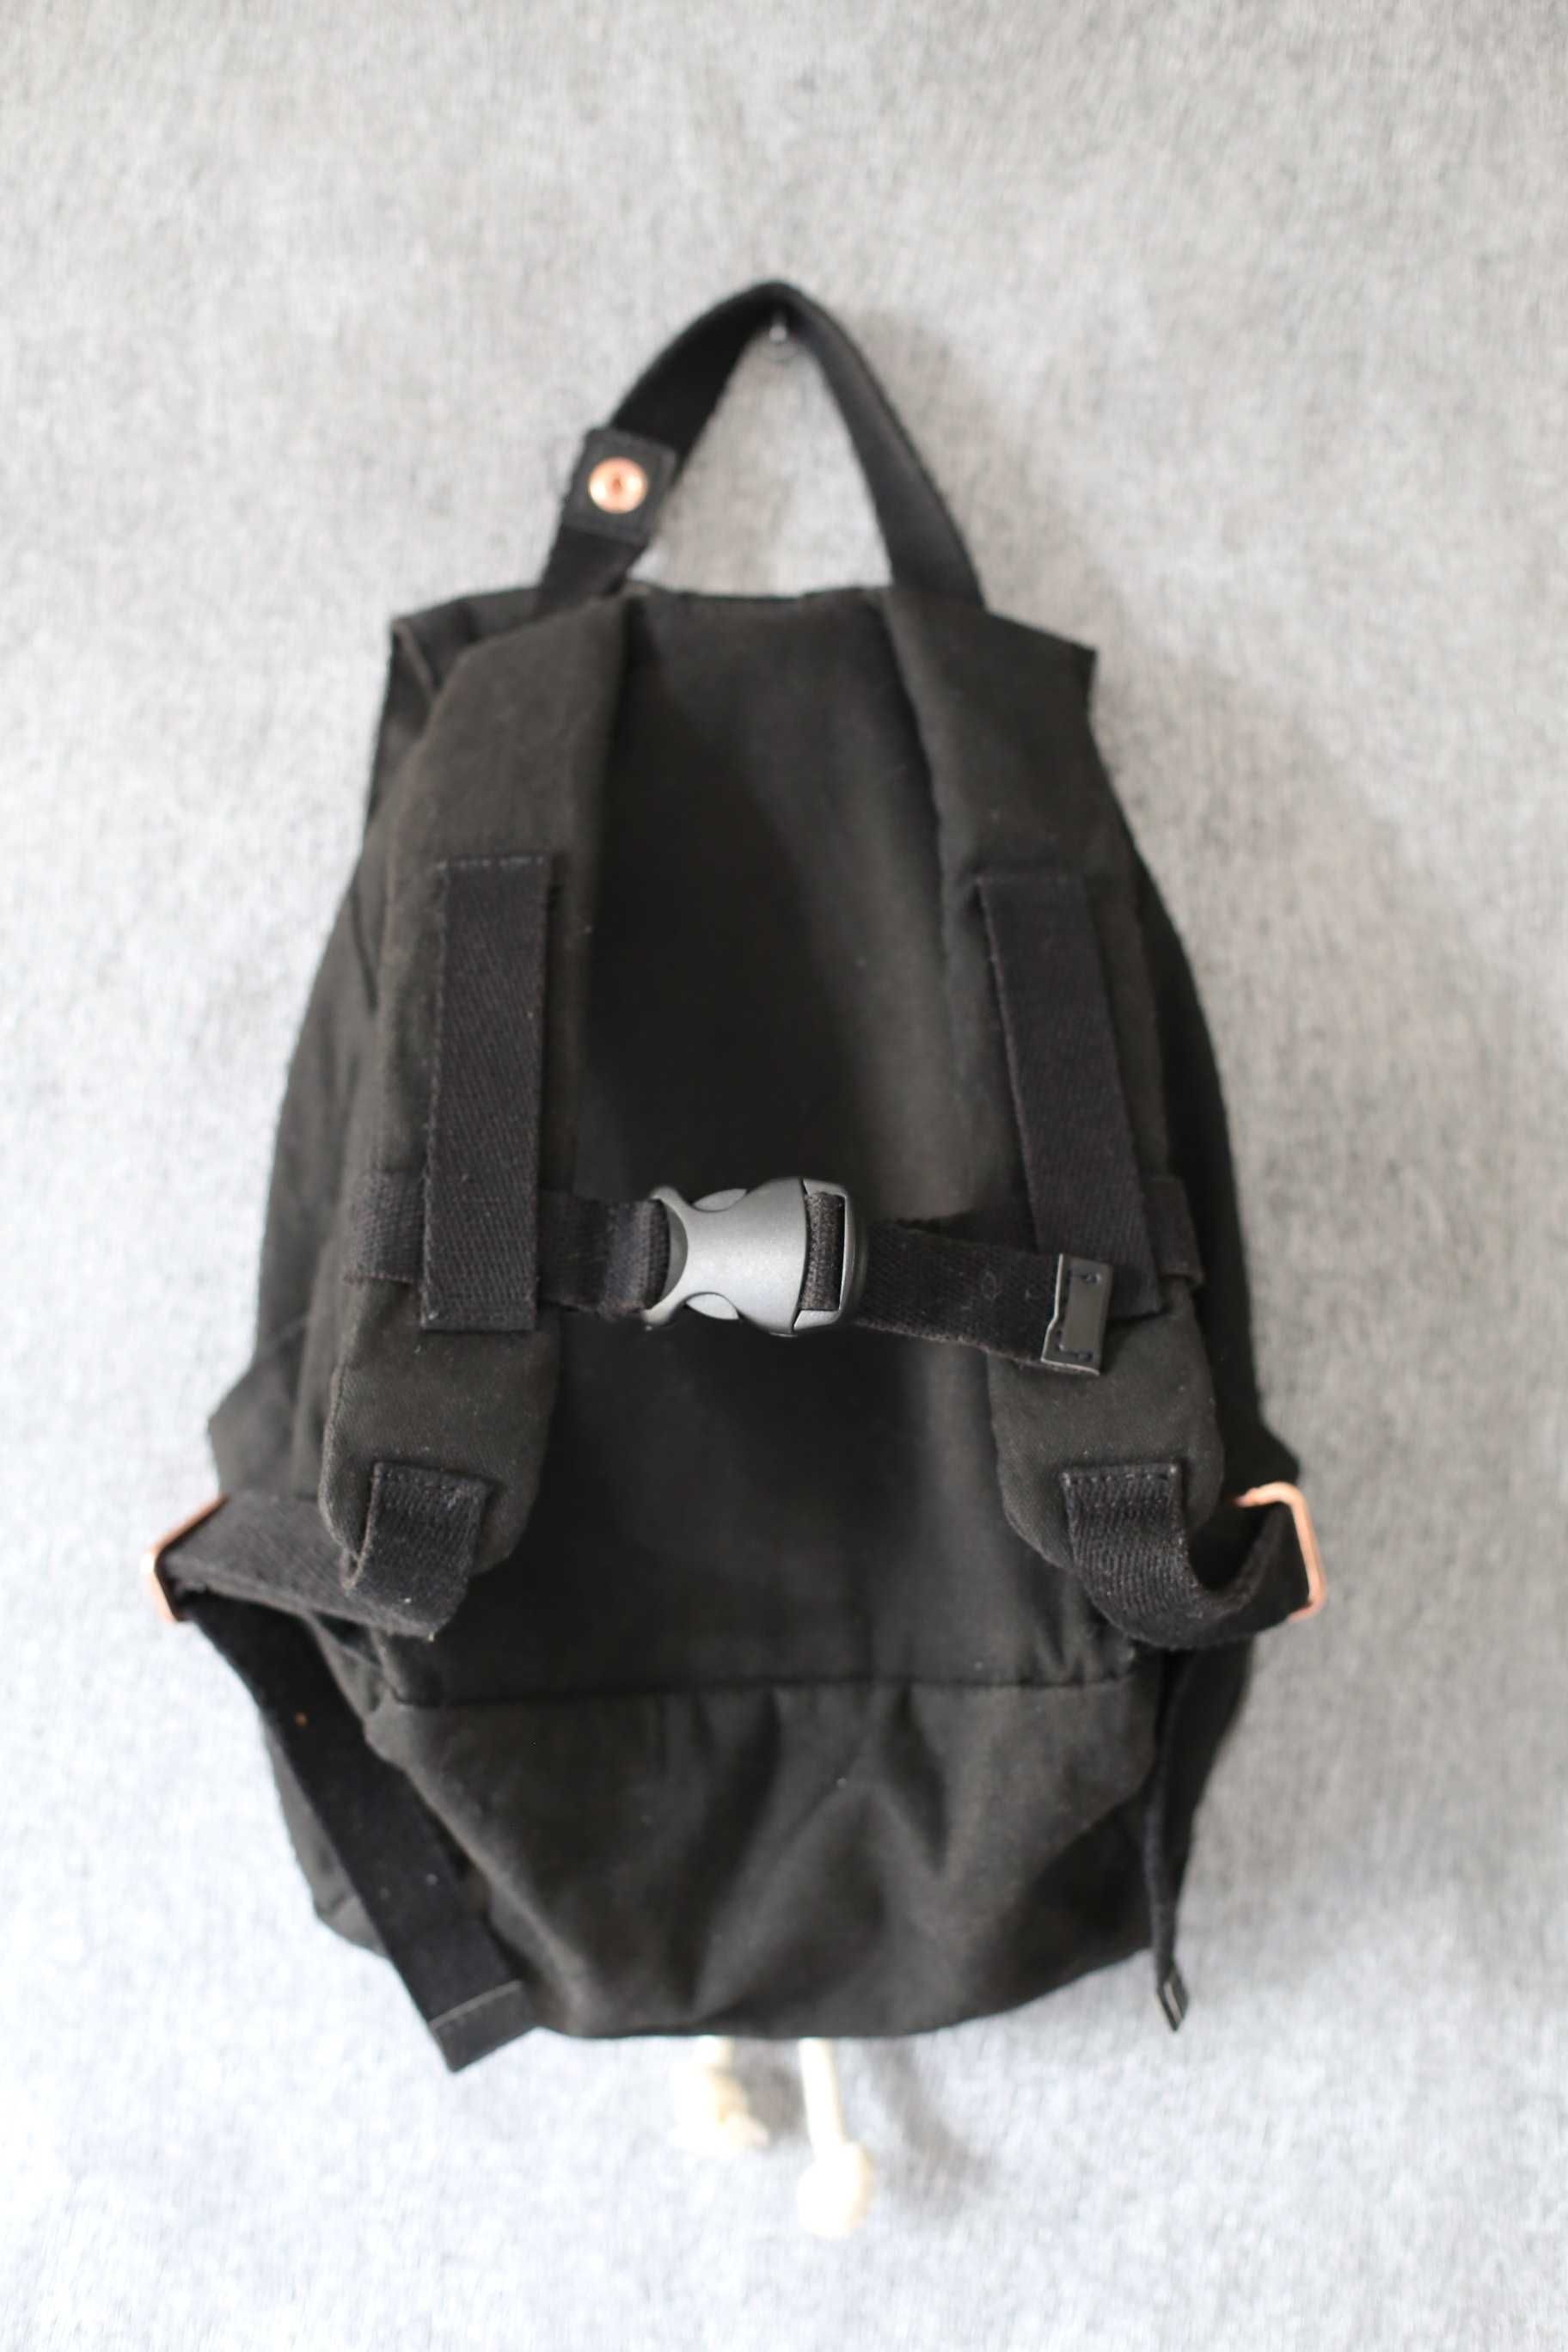 KAOS Mini-Ransel kids backpack plecak dziecko czarny